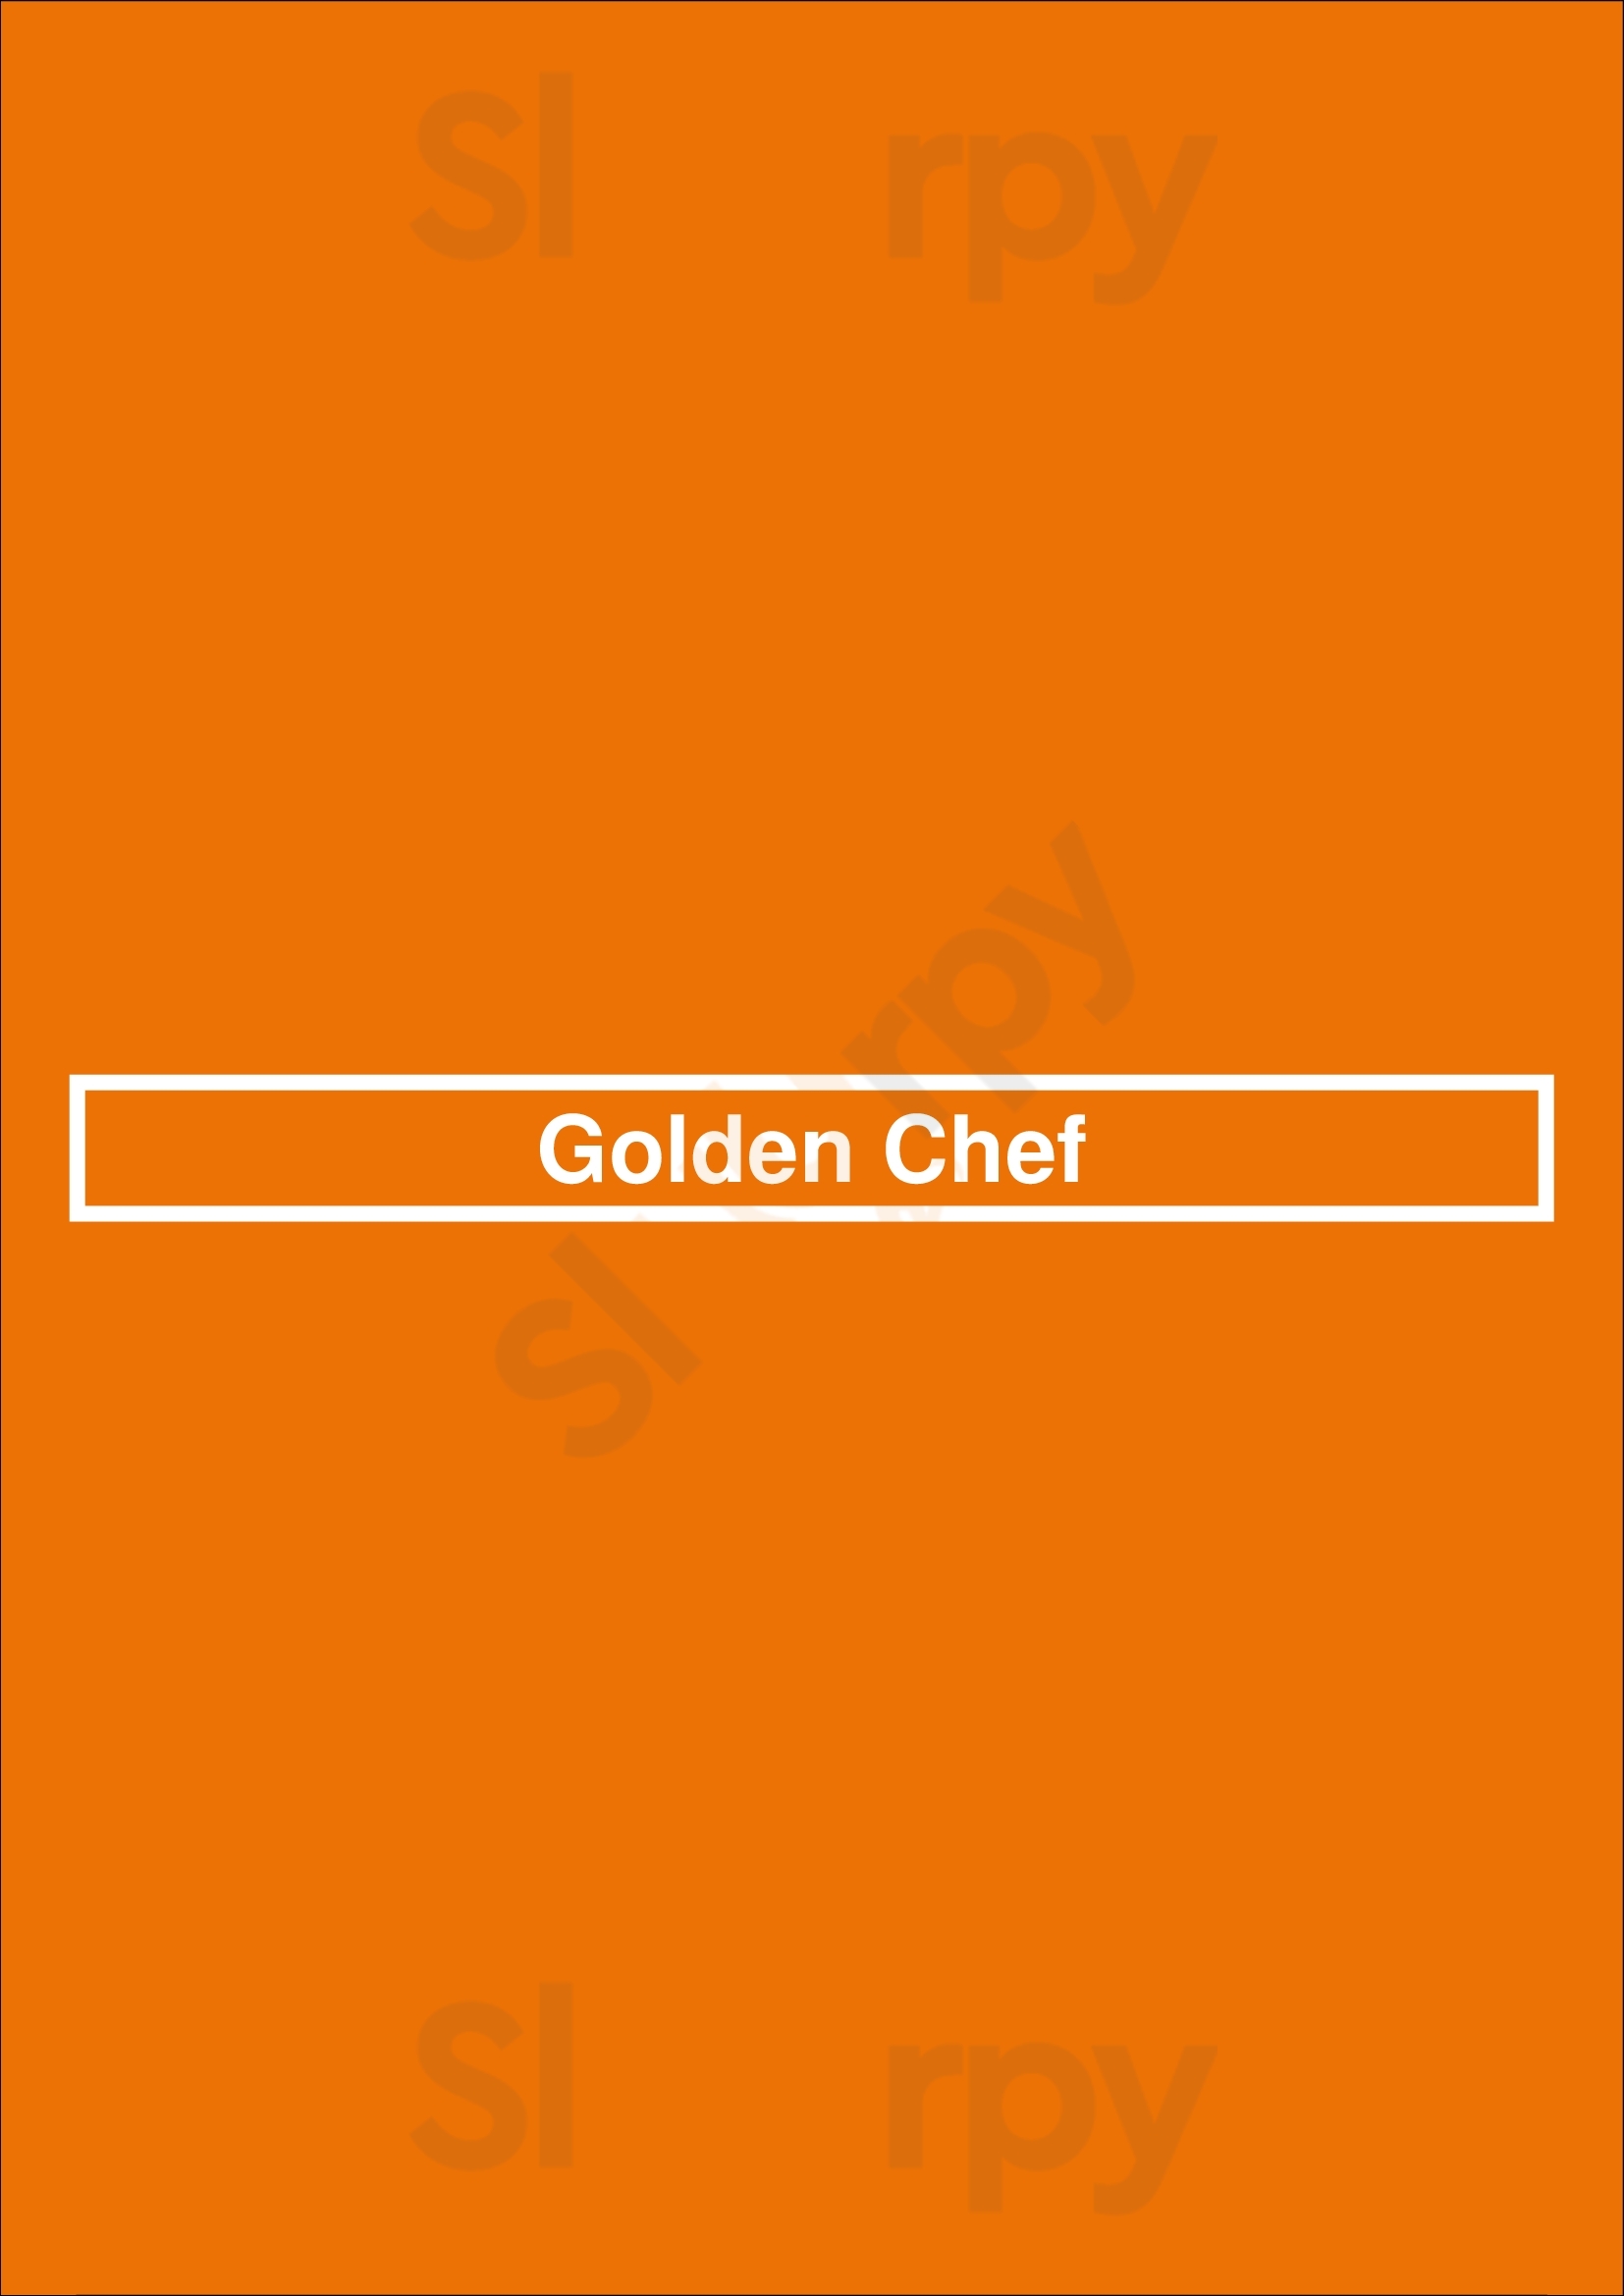 Golden Chef Ellesmere Port Menu - 1